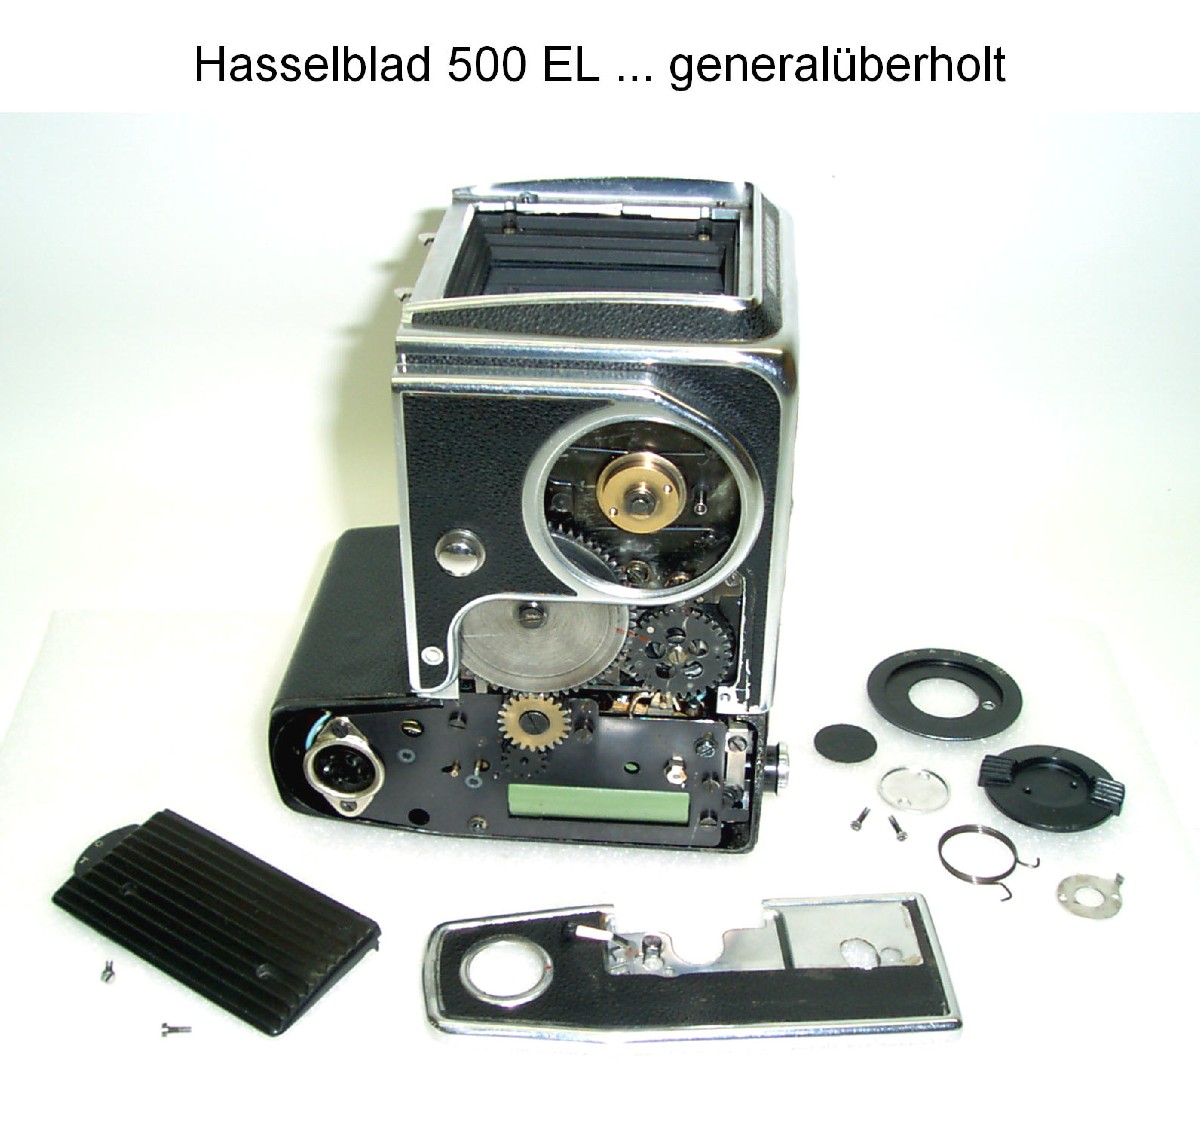 Hasselblad 500 EL